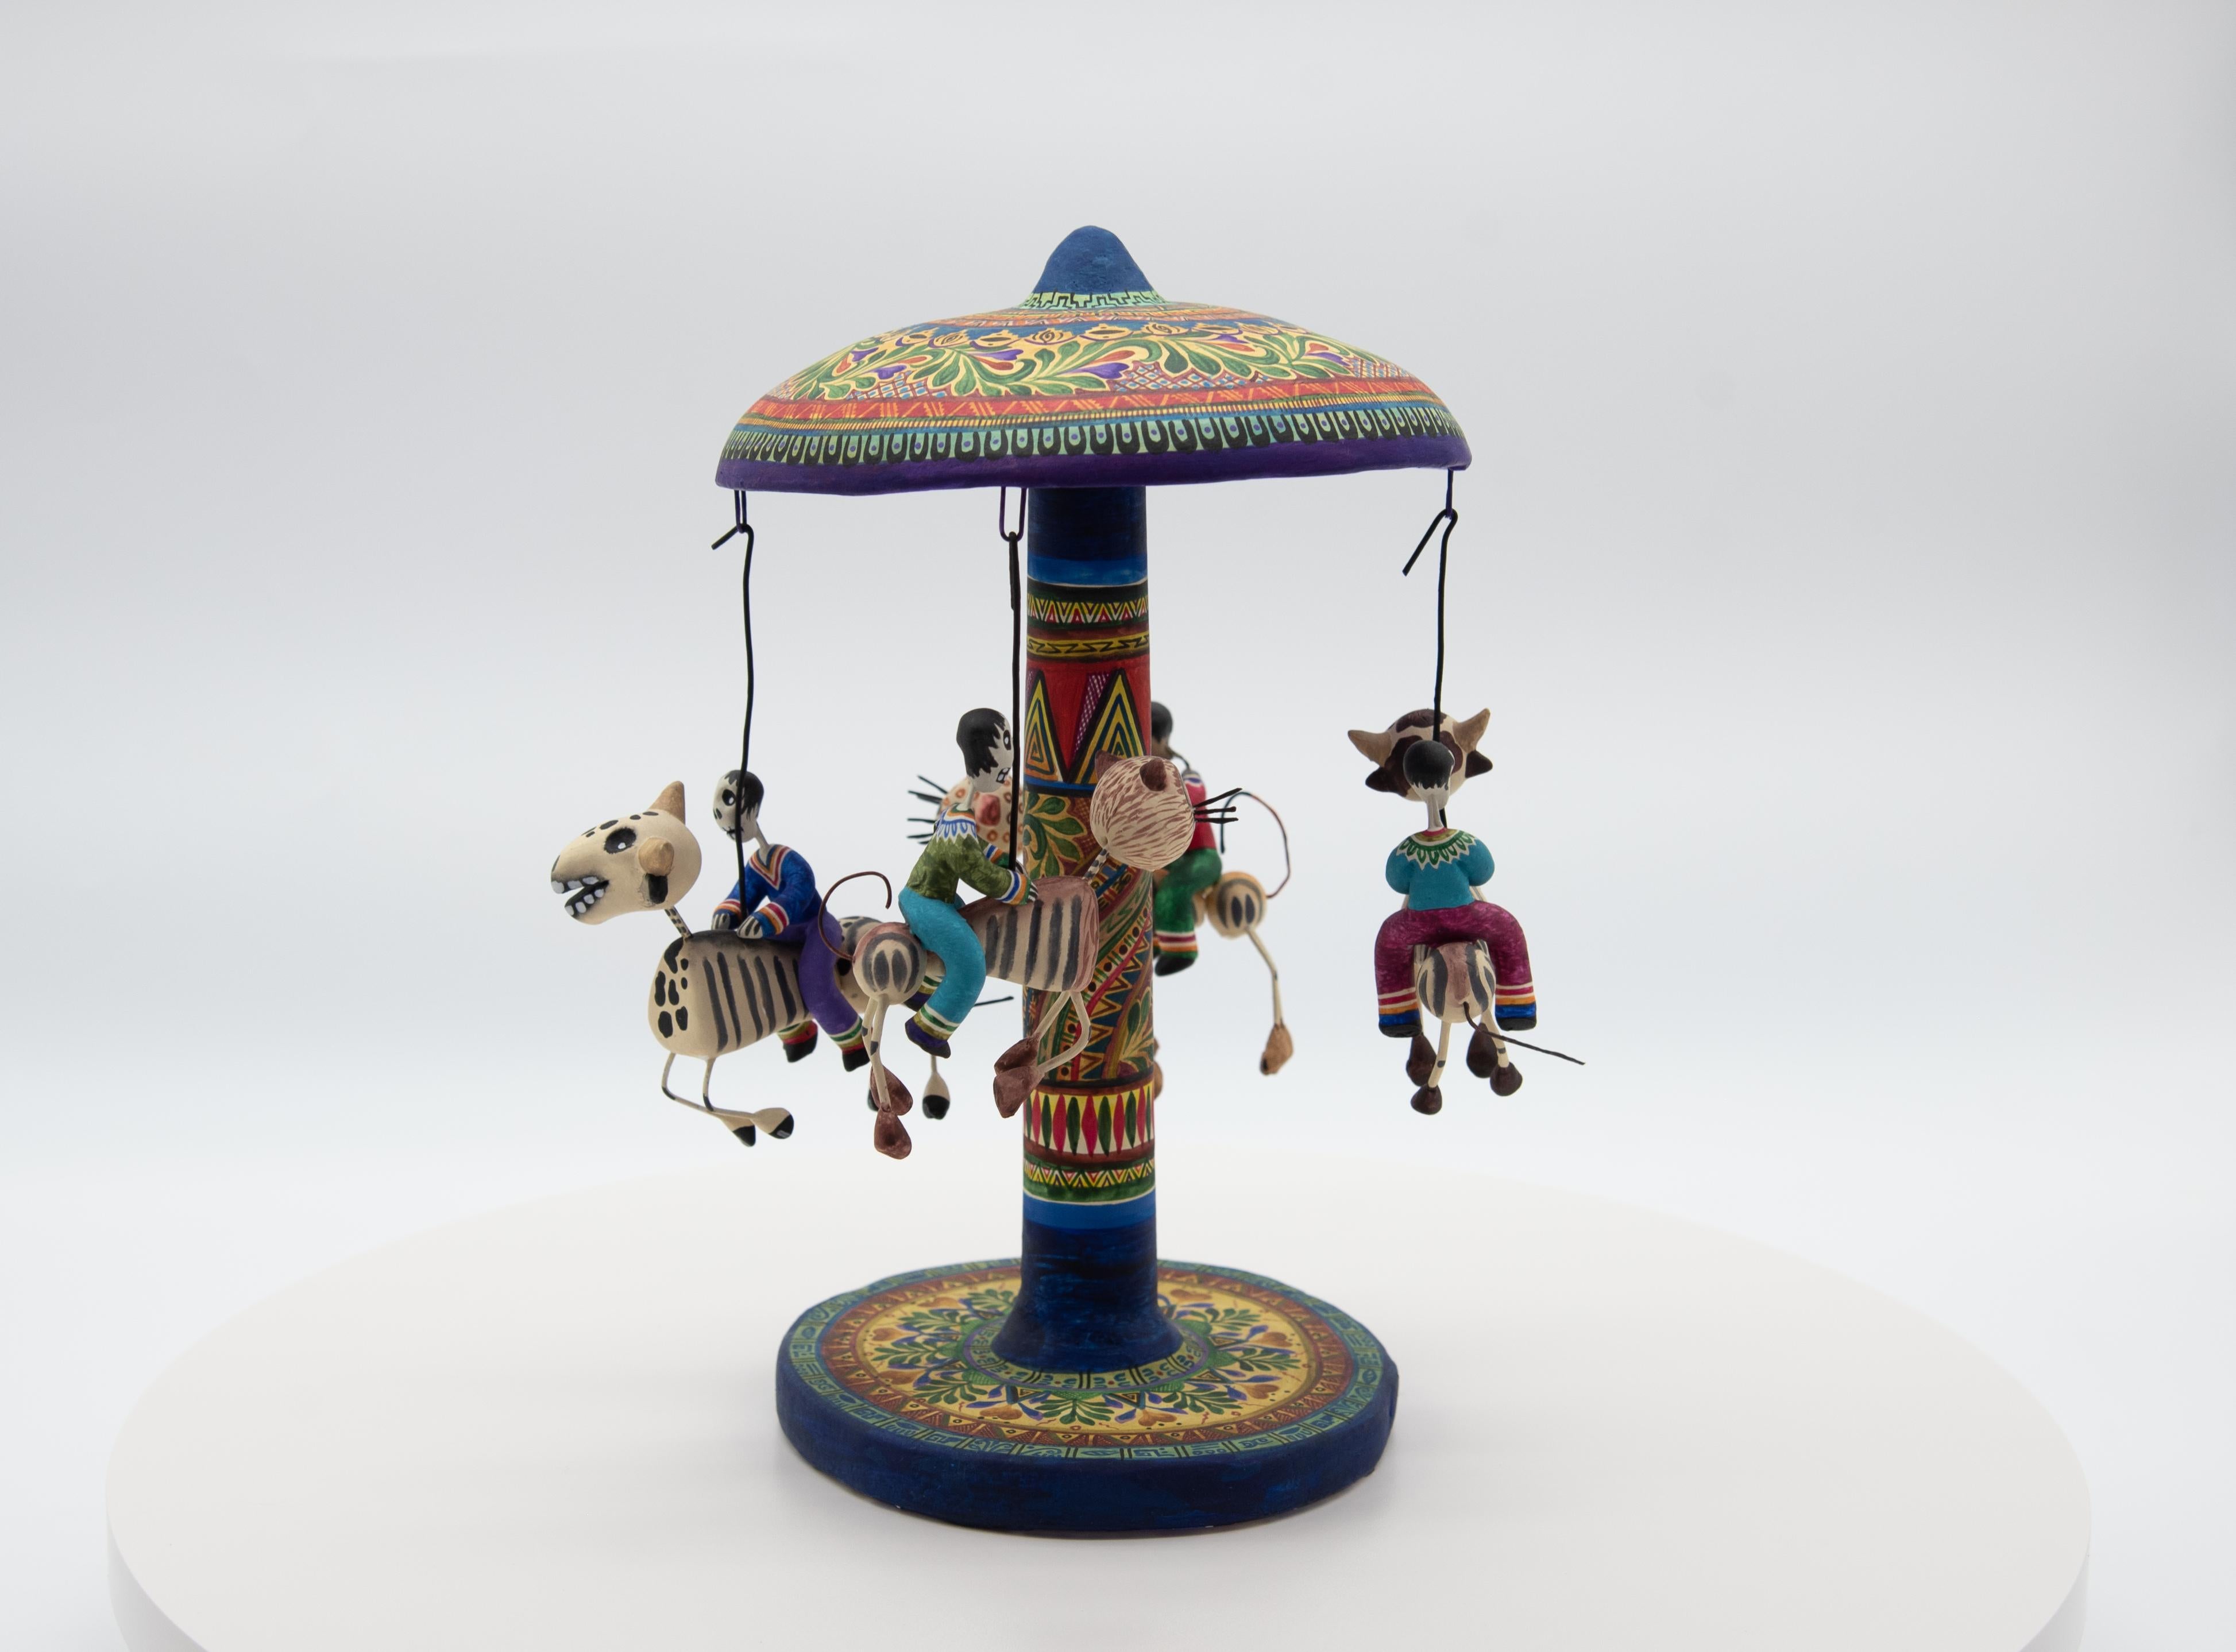 North American Carousel Day of the Dead Ceramic Mexican Folk Art by Familia Castillo  For Sale